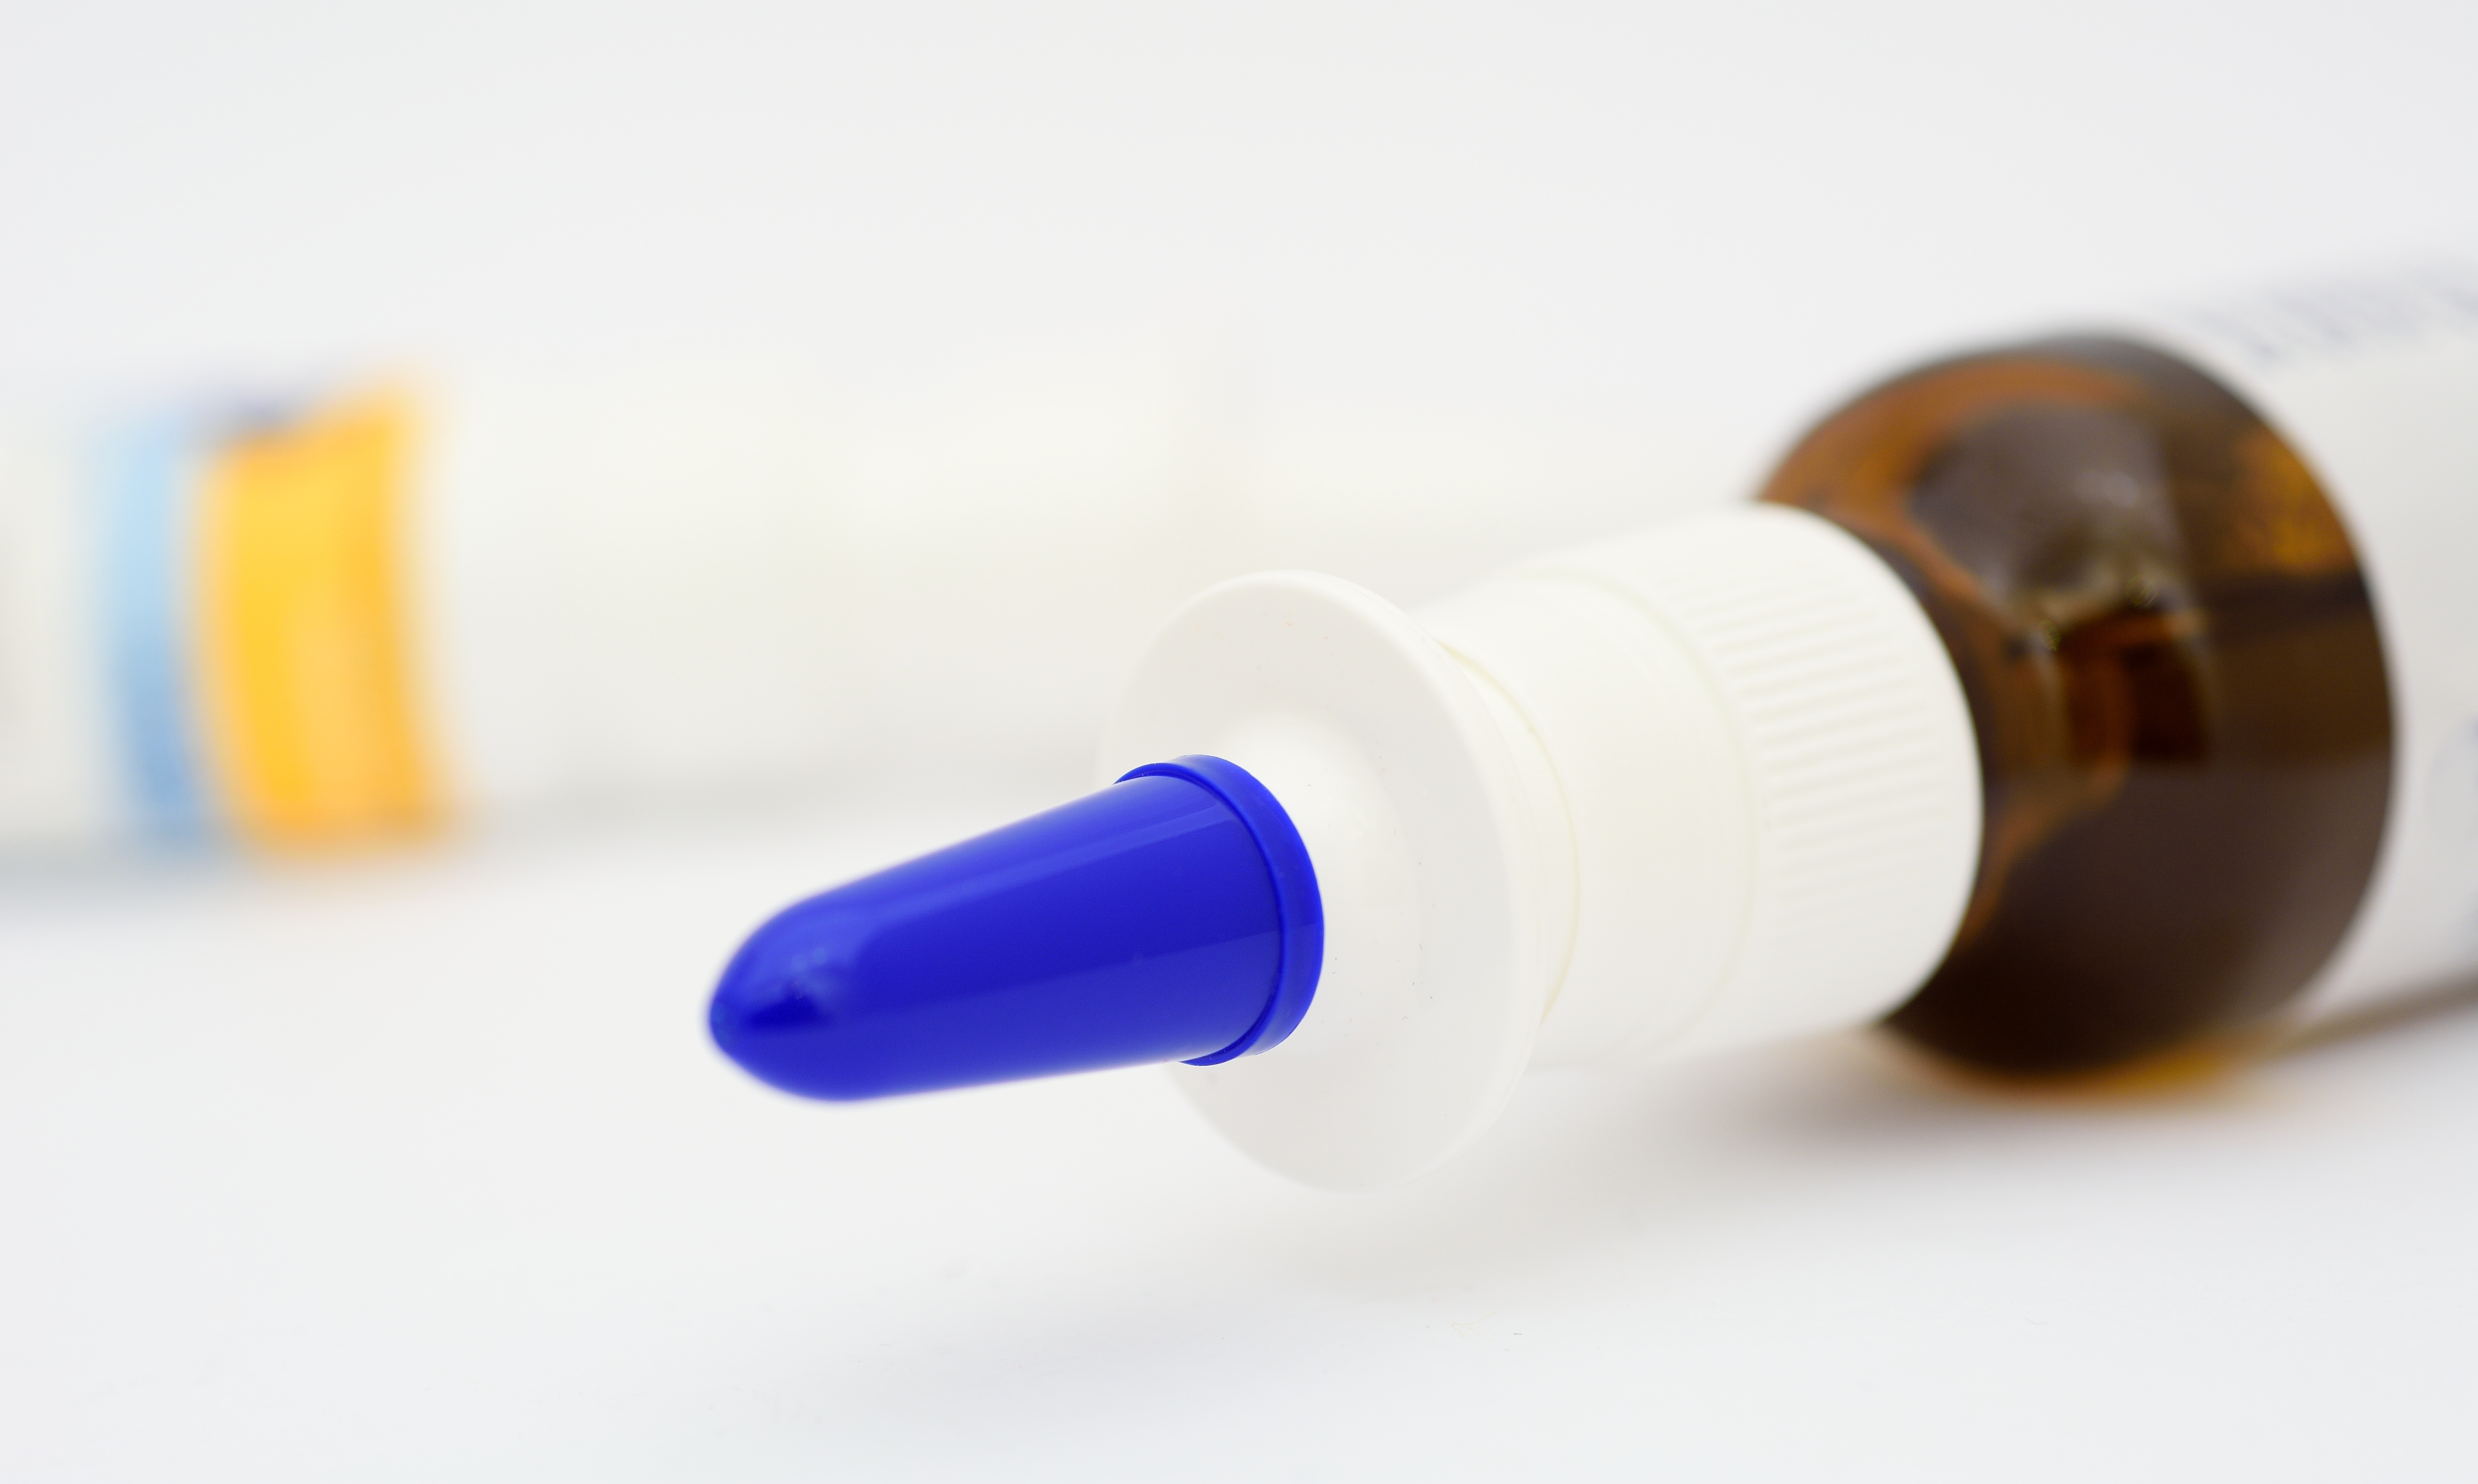 Un spray d'insuline permet d’améliorer la marche et la fonction cognitive chez les patients âgés, avec et sans diabète de type 2 (Visuel Adobe Stock 61621476)